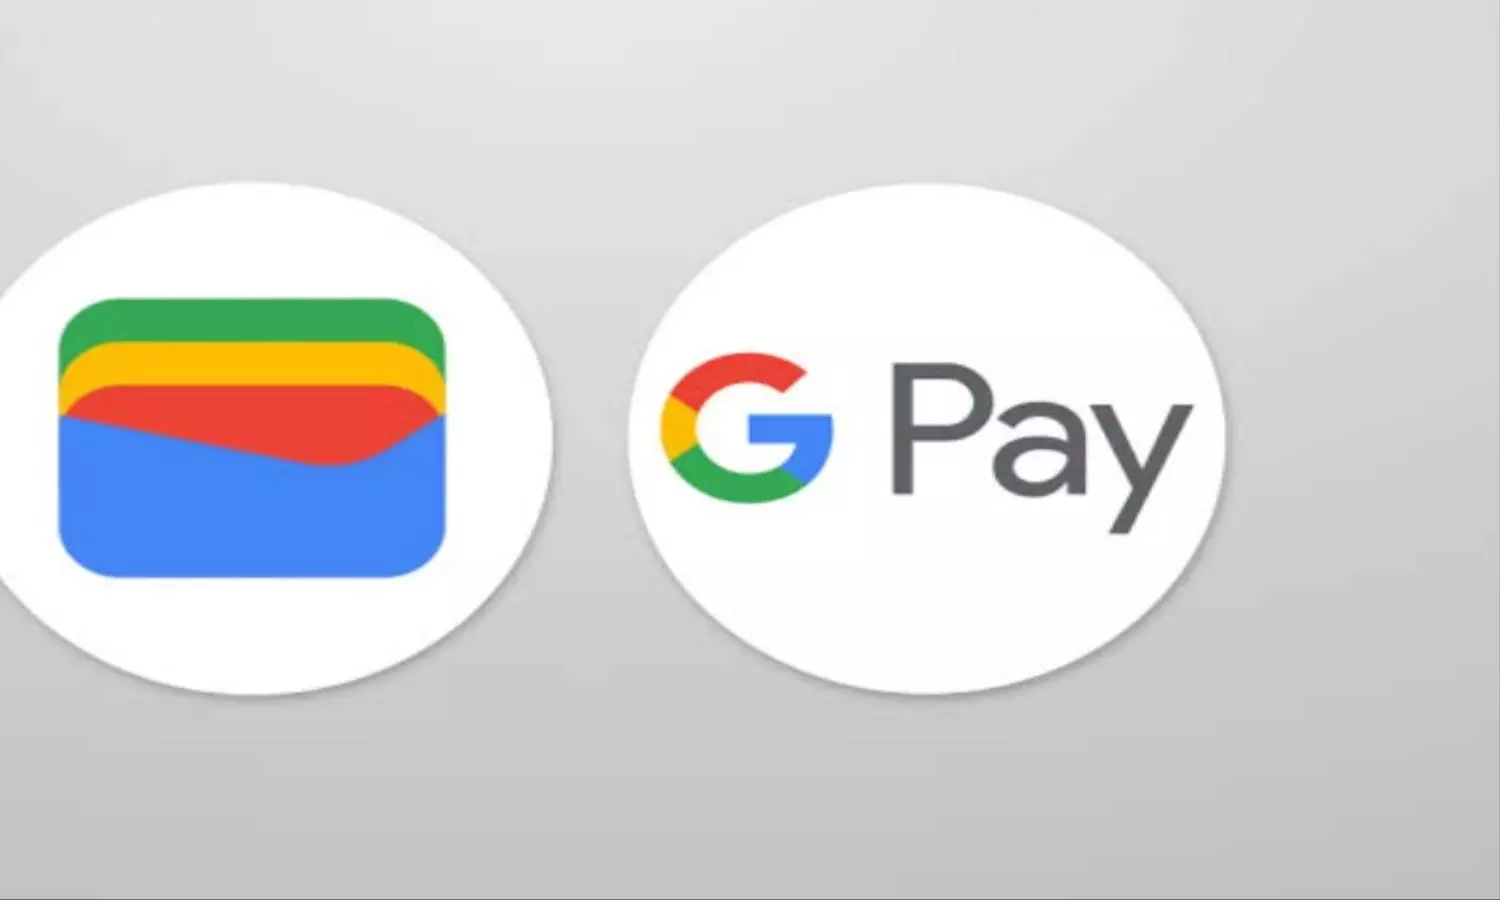 Google Pay यूजर्स के लिए जरूरी खबर, अब बदलेगा पेमेंट करने का तरीका